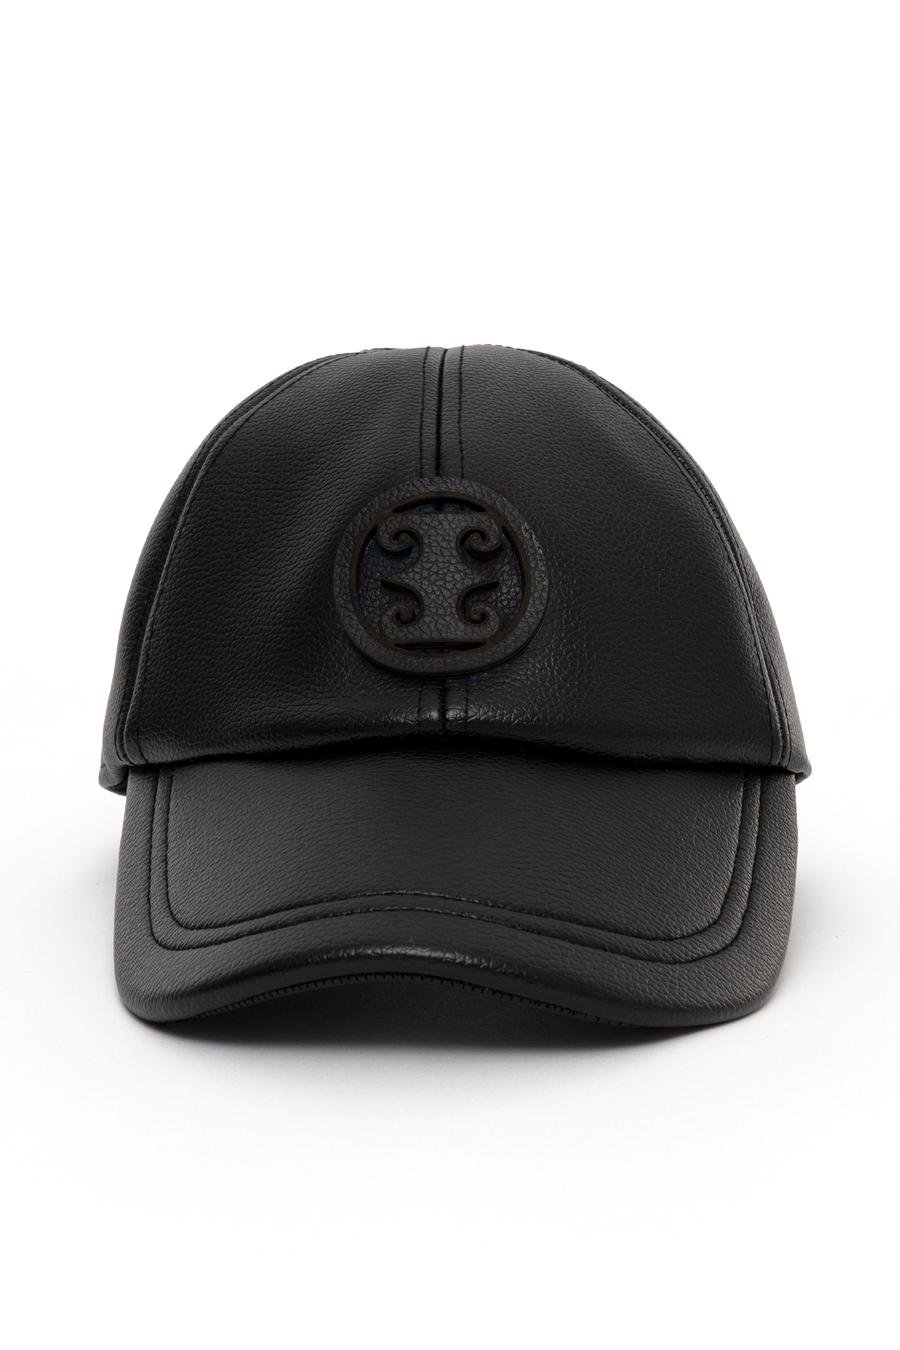 کلاه  سیاه  استاندارد  زنانه  پیرکاردین